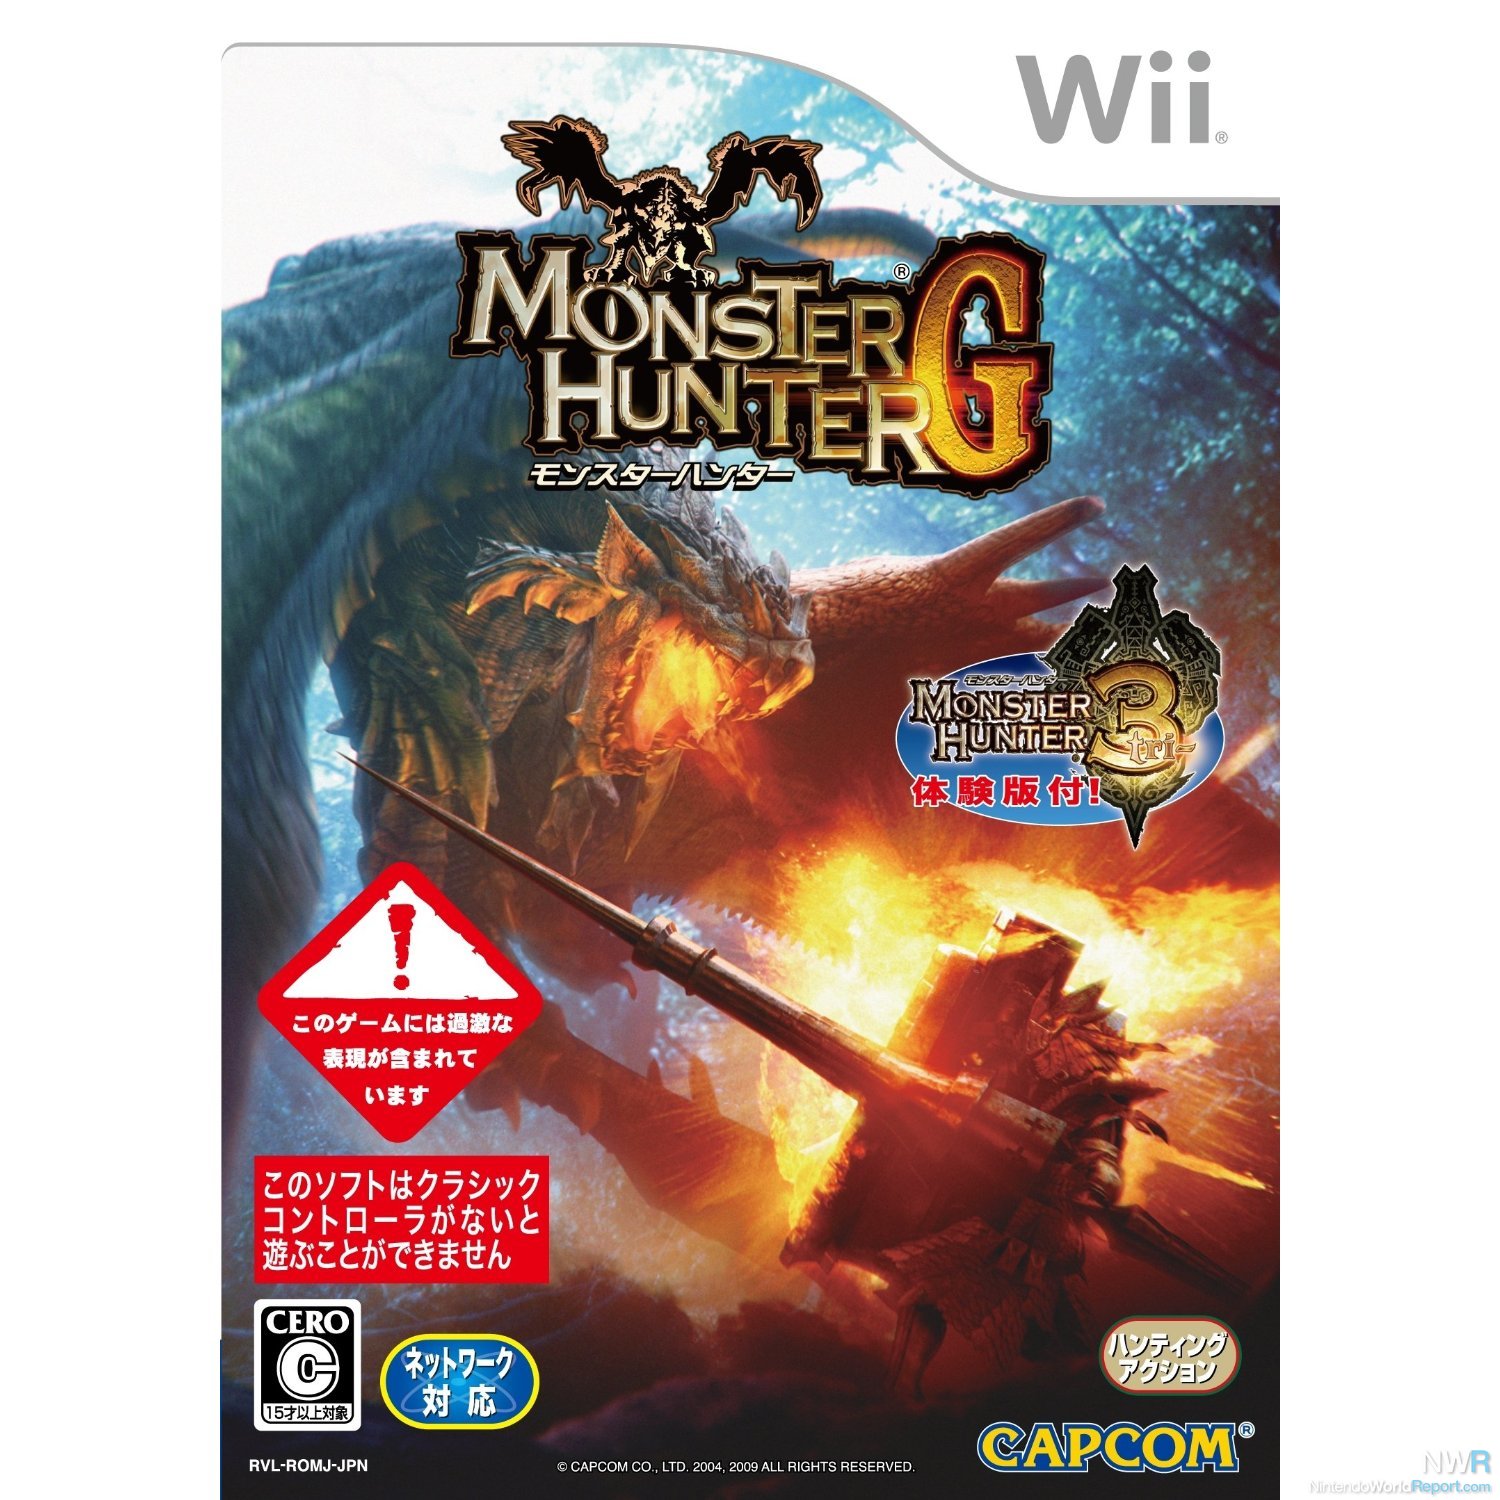 Monster Hunter G, Tri Online Mode Shutting Down in Japan - News - Nintendo  World Report